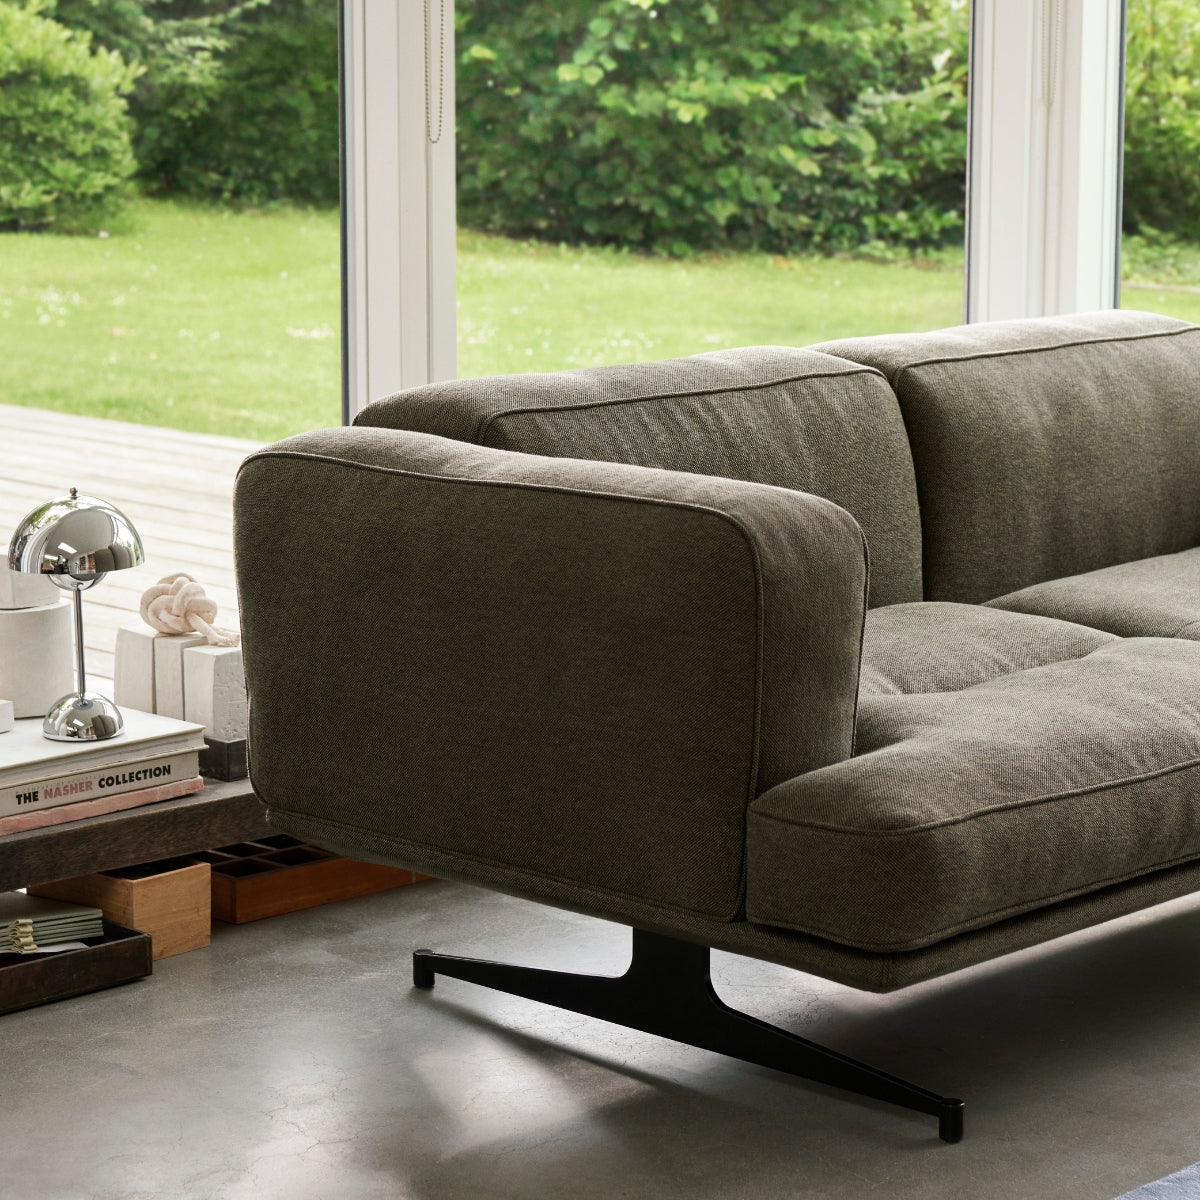 &Tradition | Inland AV22 sofa - tekstil